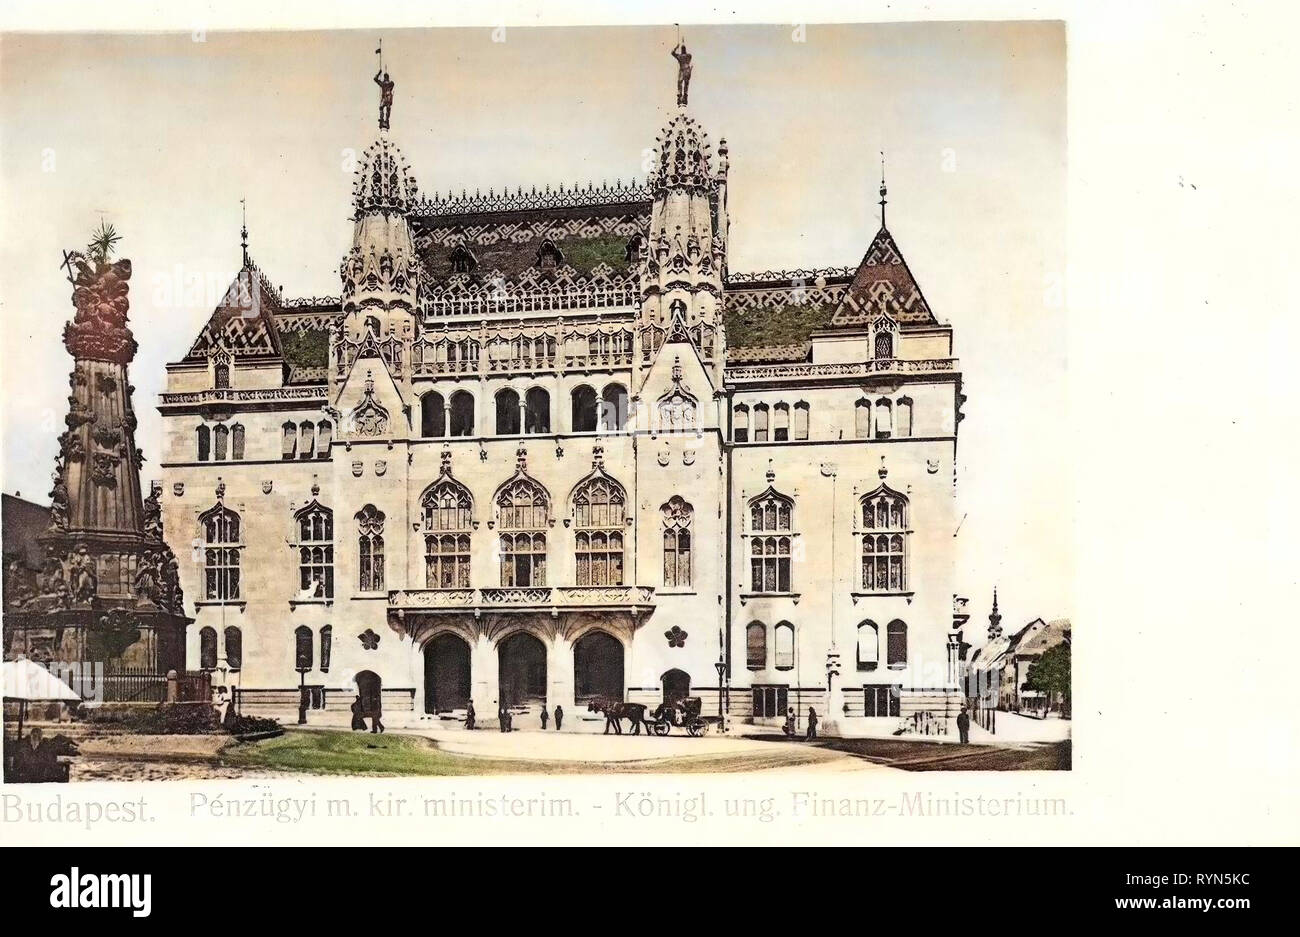 Bâtiment de la culture hongroise Foundation et la colonne de la Sainte Trinité, 1904, Budapest, Hongrie, Königlich ungarisches Finanzministerium Banque D'Images